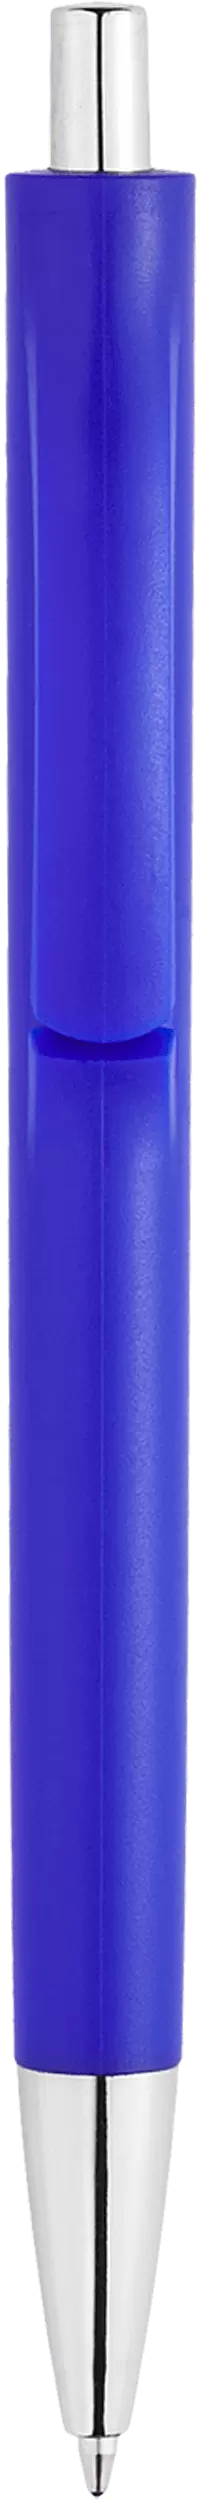 Ручка IGLA CHROME Синяя 1032-01